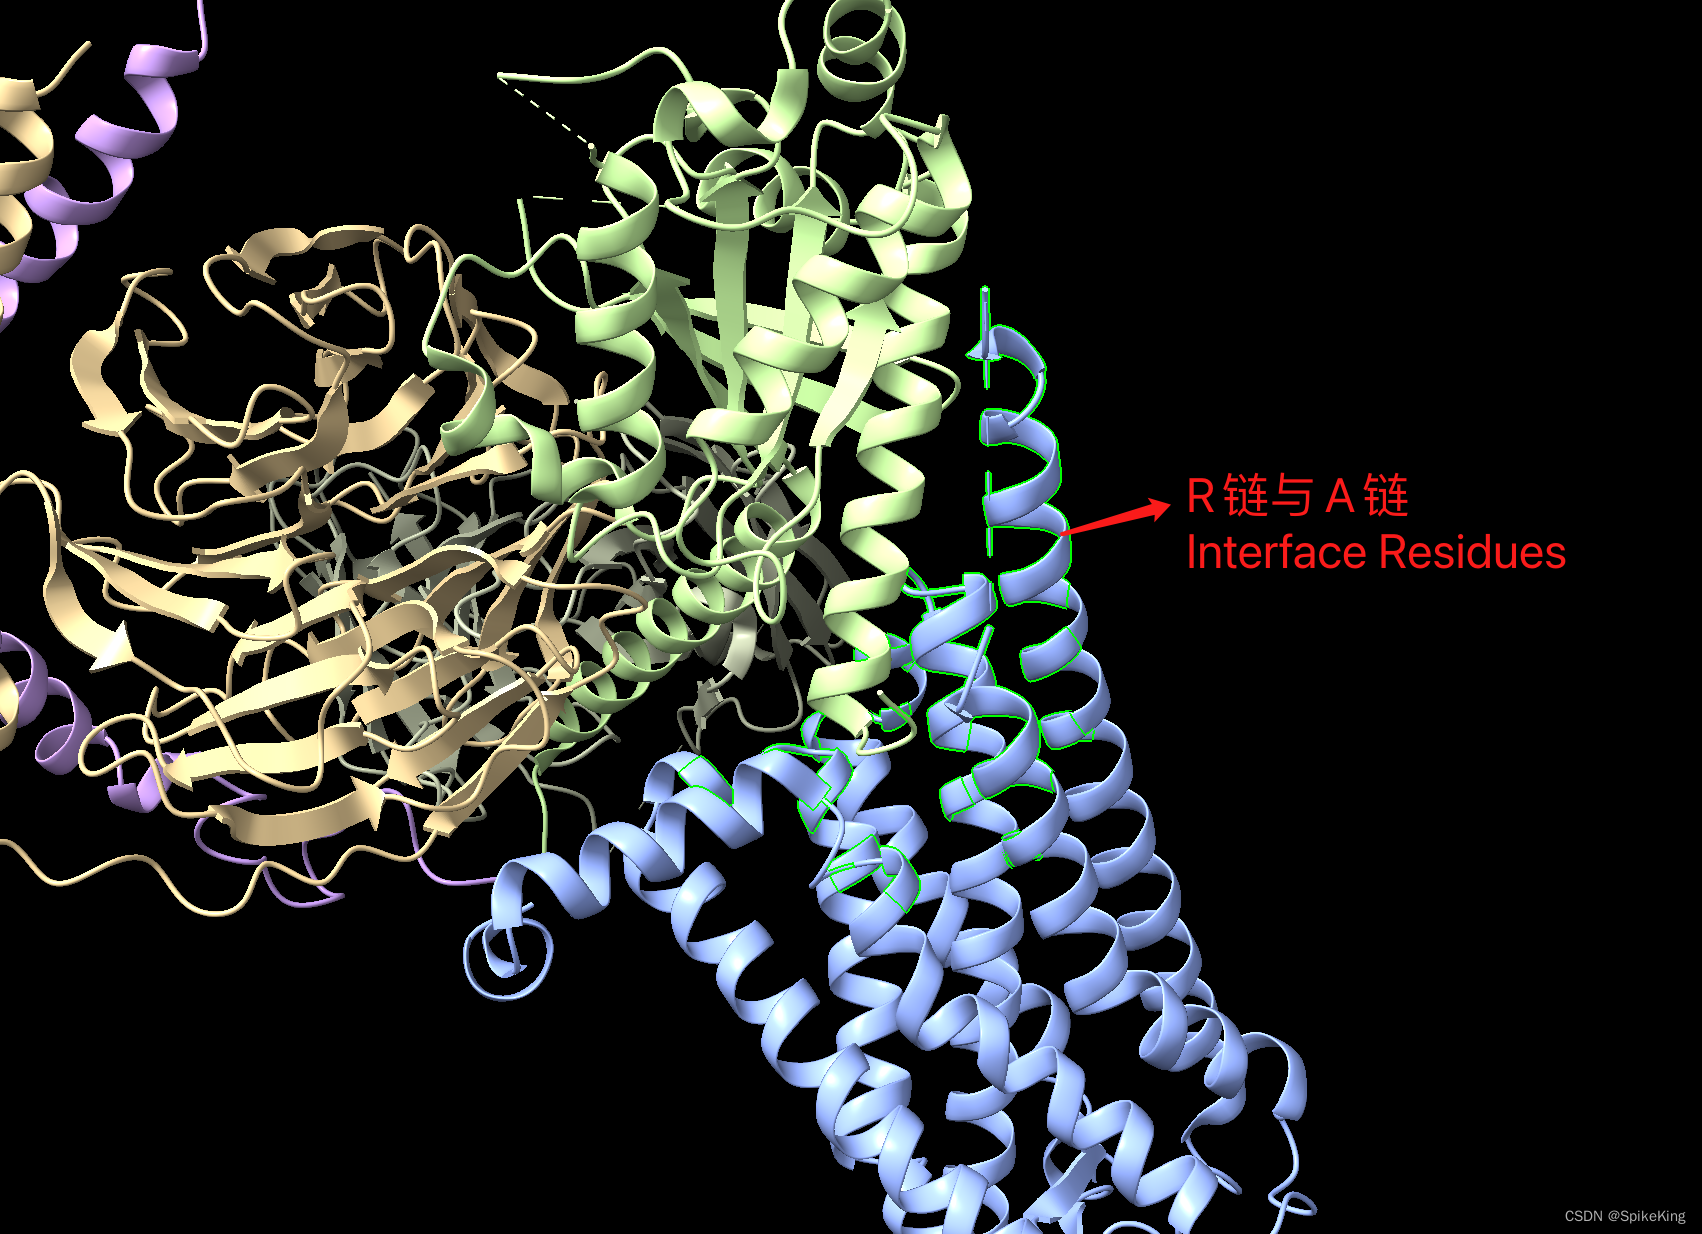 PSP - 计算蛋白质复合物链间接触的残基与面积